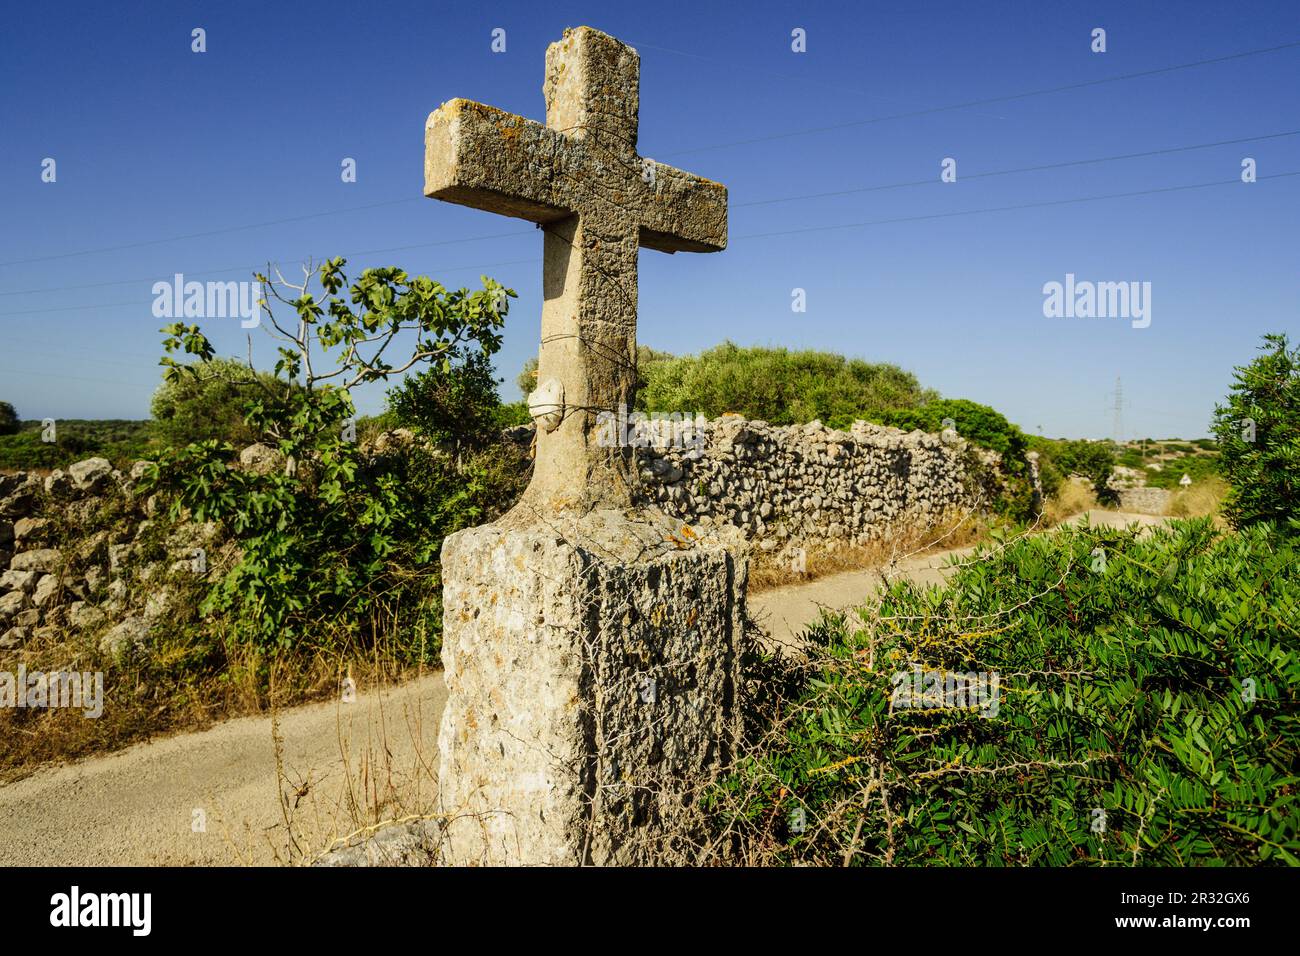 cruz de termino, Son Olives, Menorca, Islas Baleares, españa, europa. Stock Photo